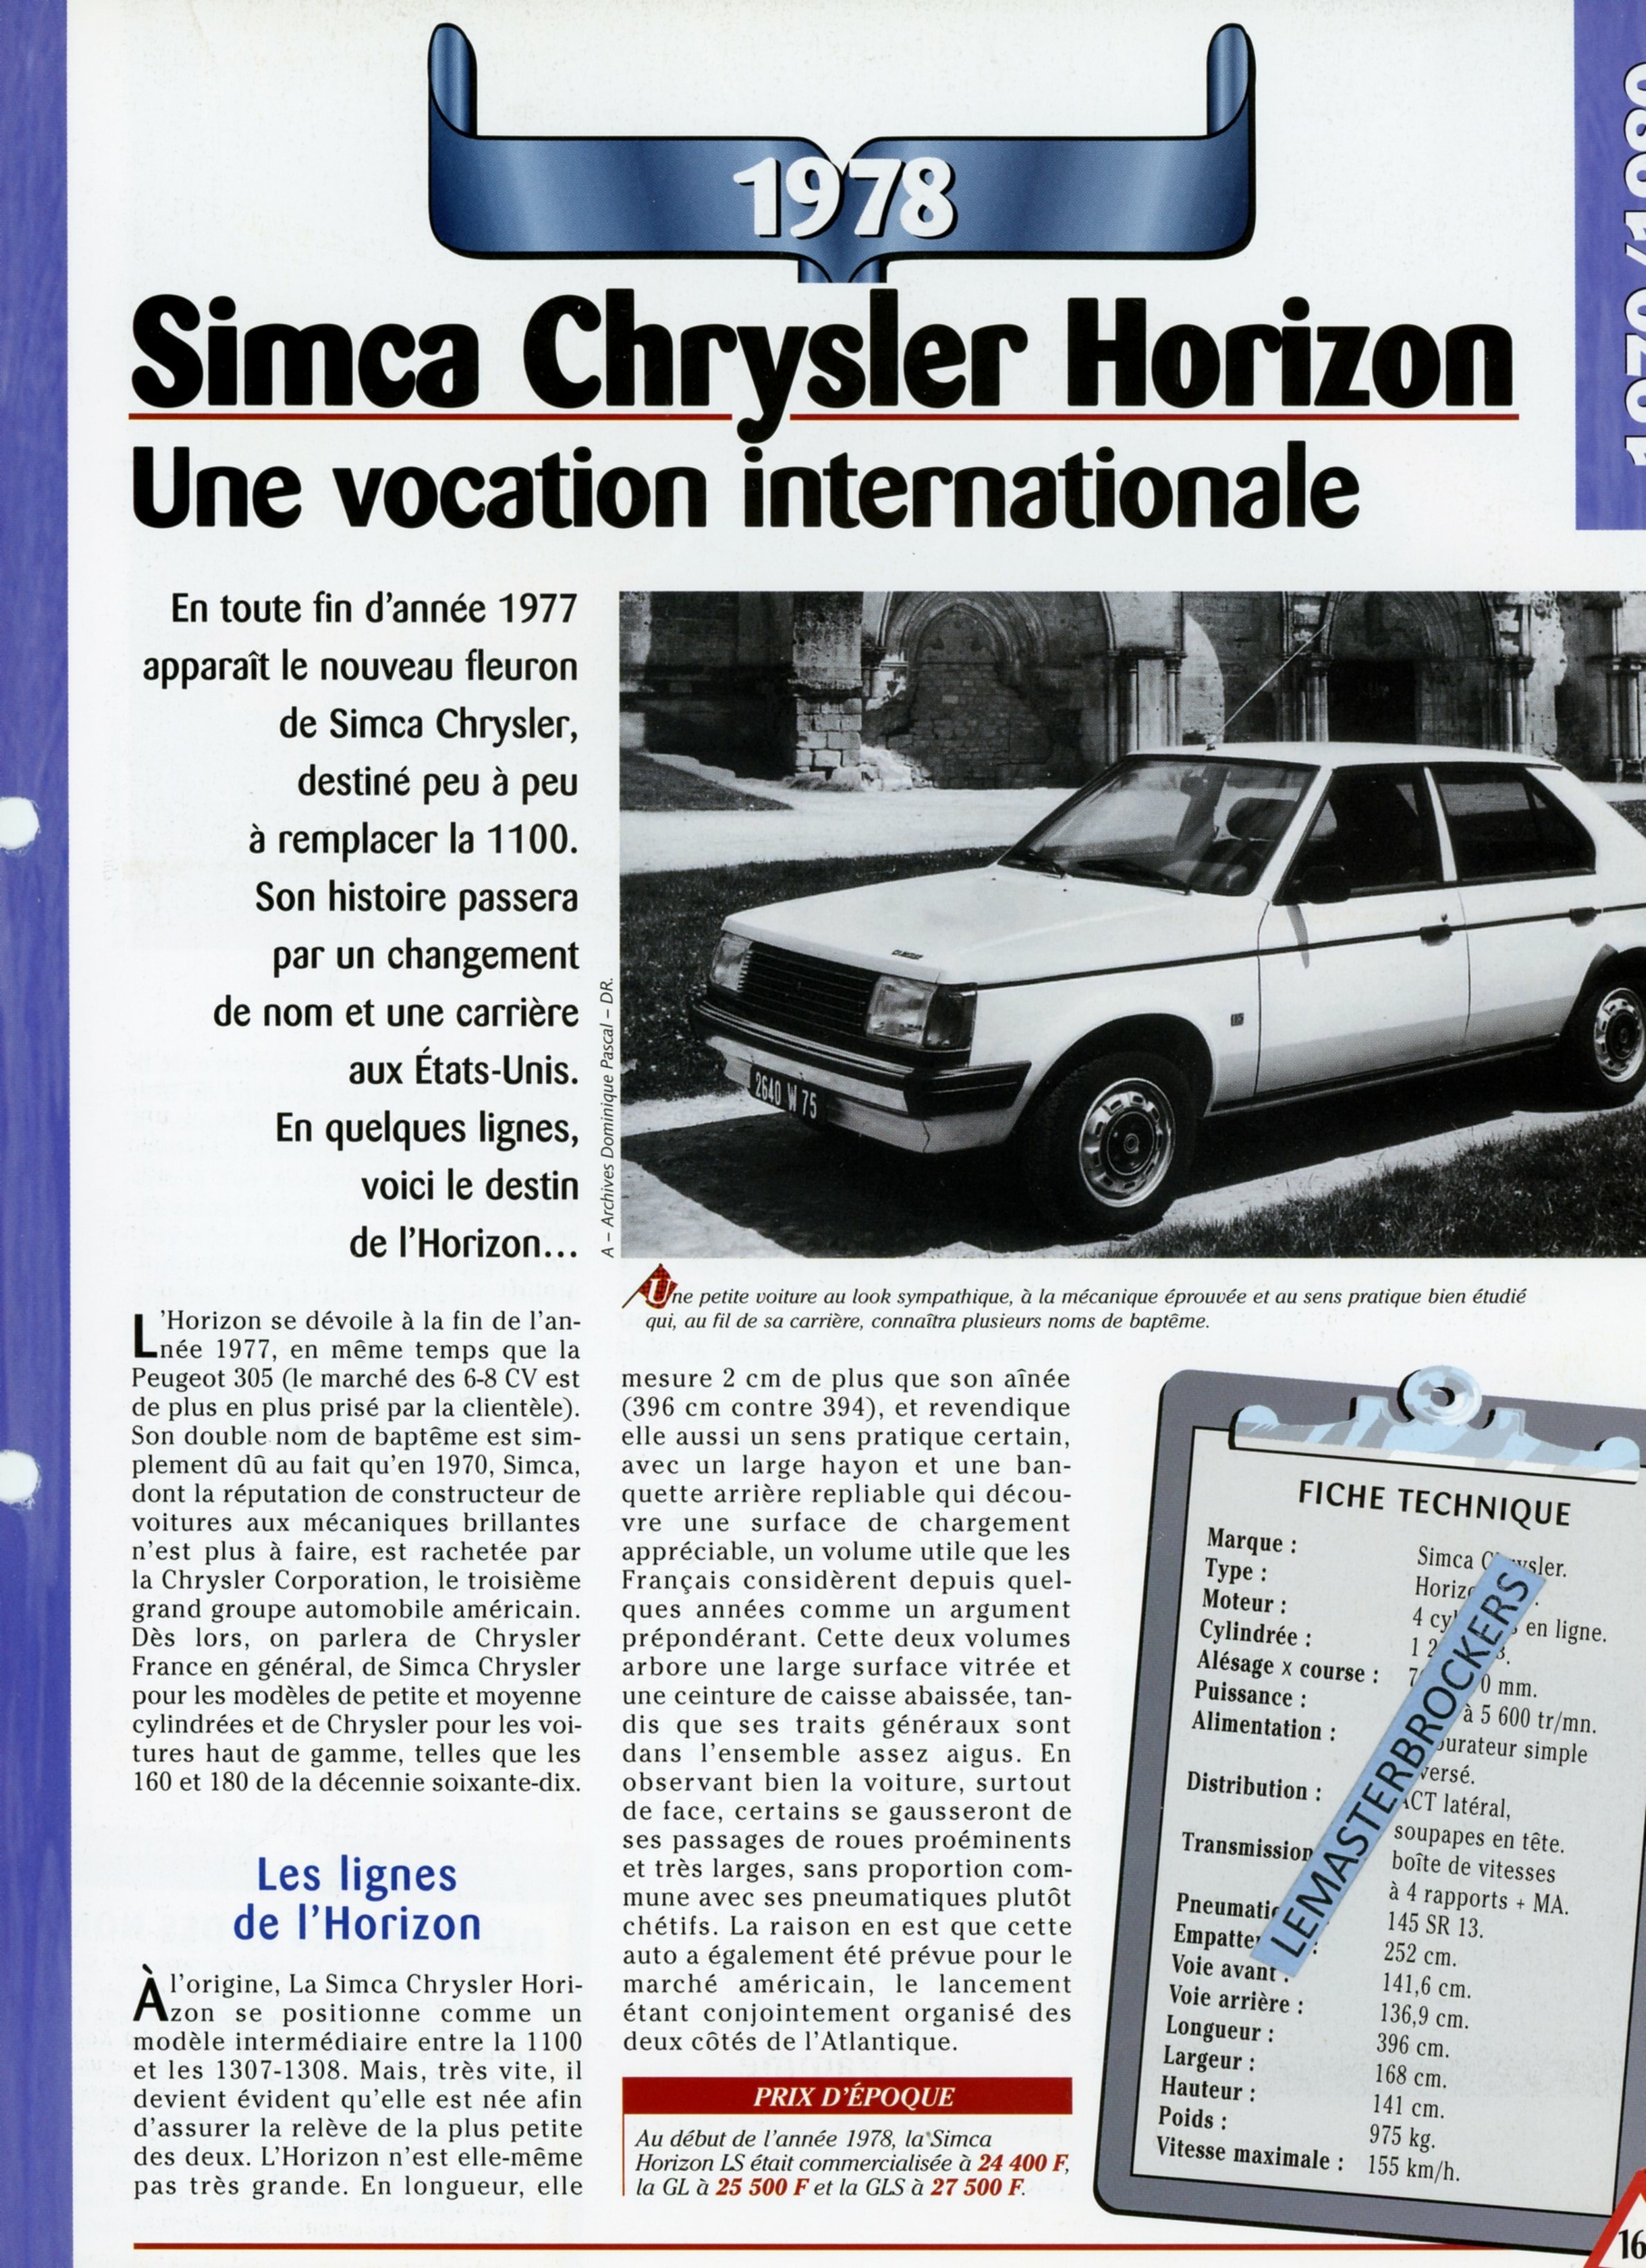 FICHE TECHNIQUE SIMCA CHRYSLER HORIZON 1978 - FICHE AUTO - HACHETTE